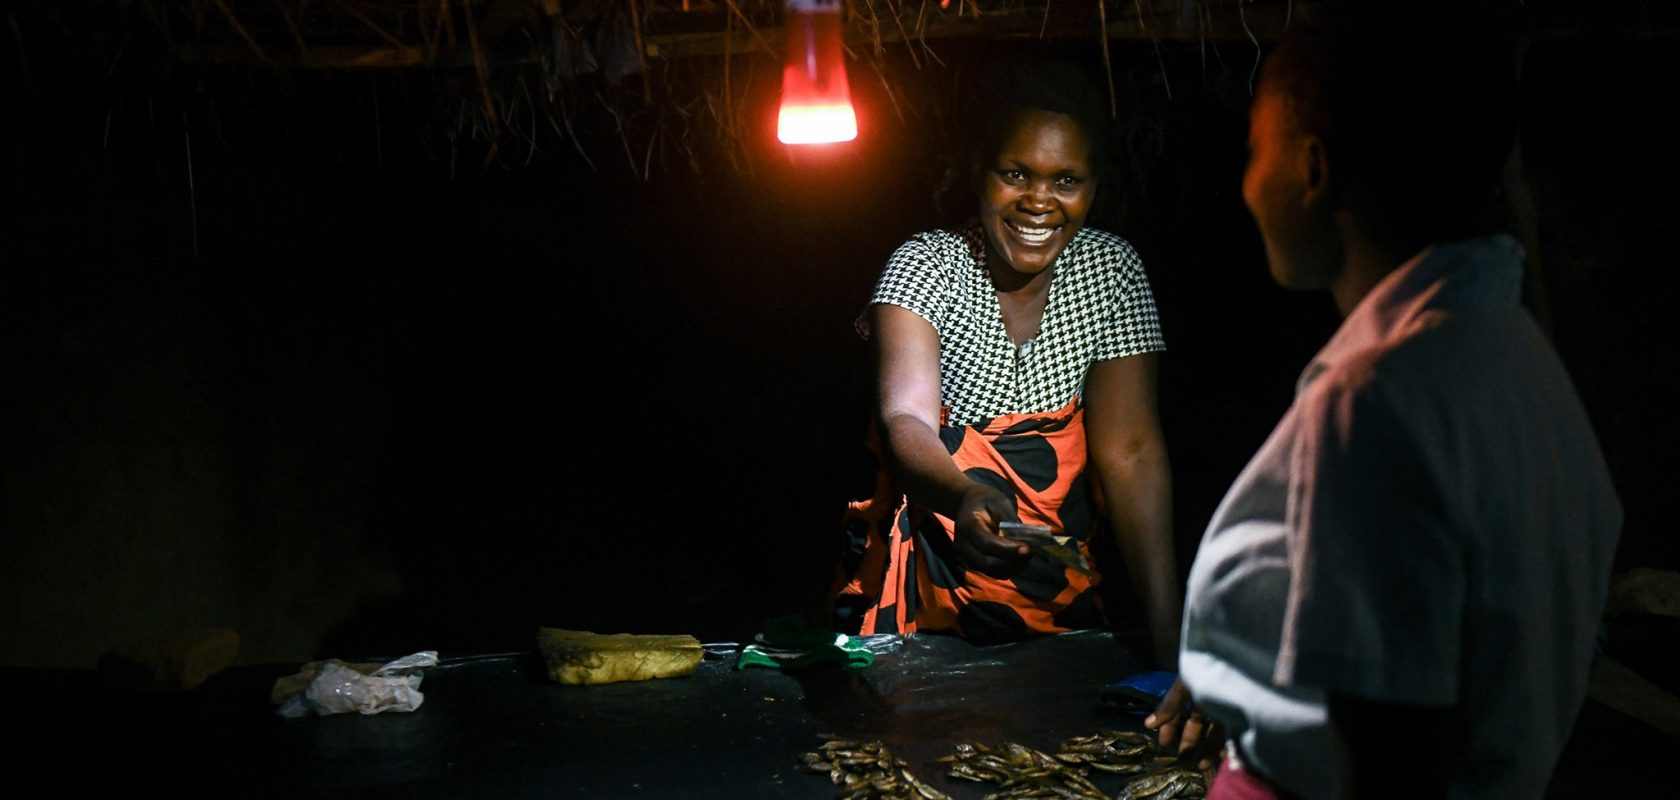 Margaret John in Malawi selling fish after dark.